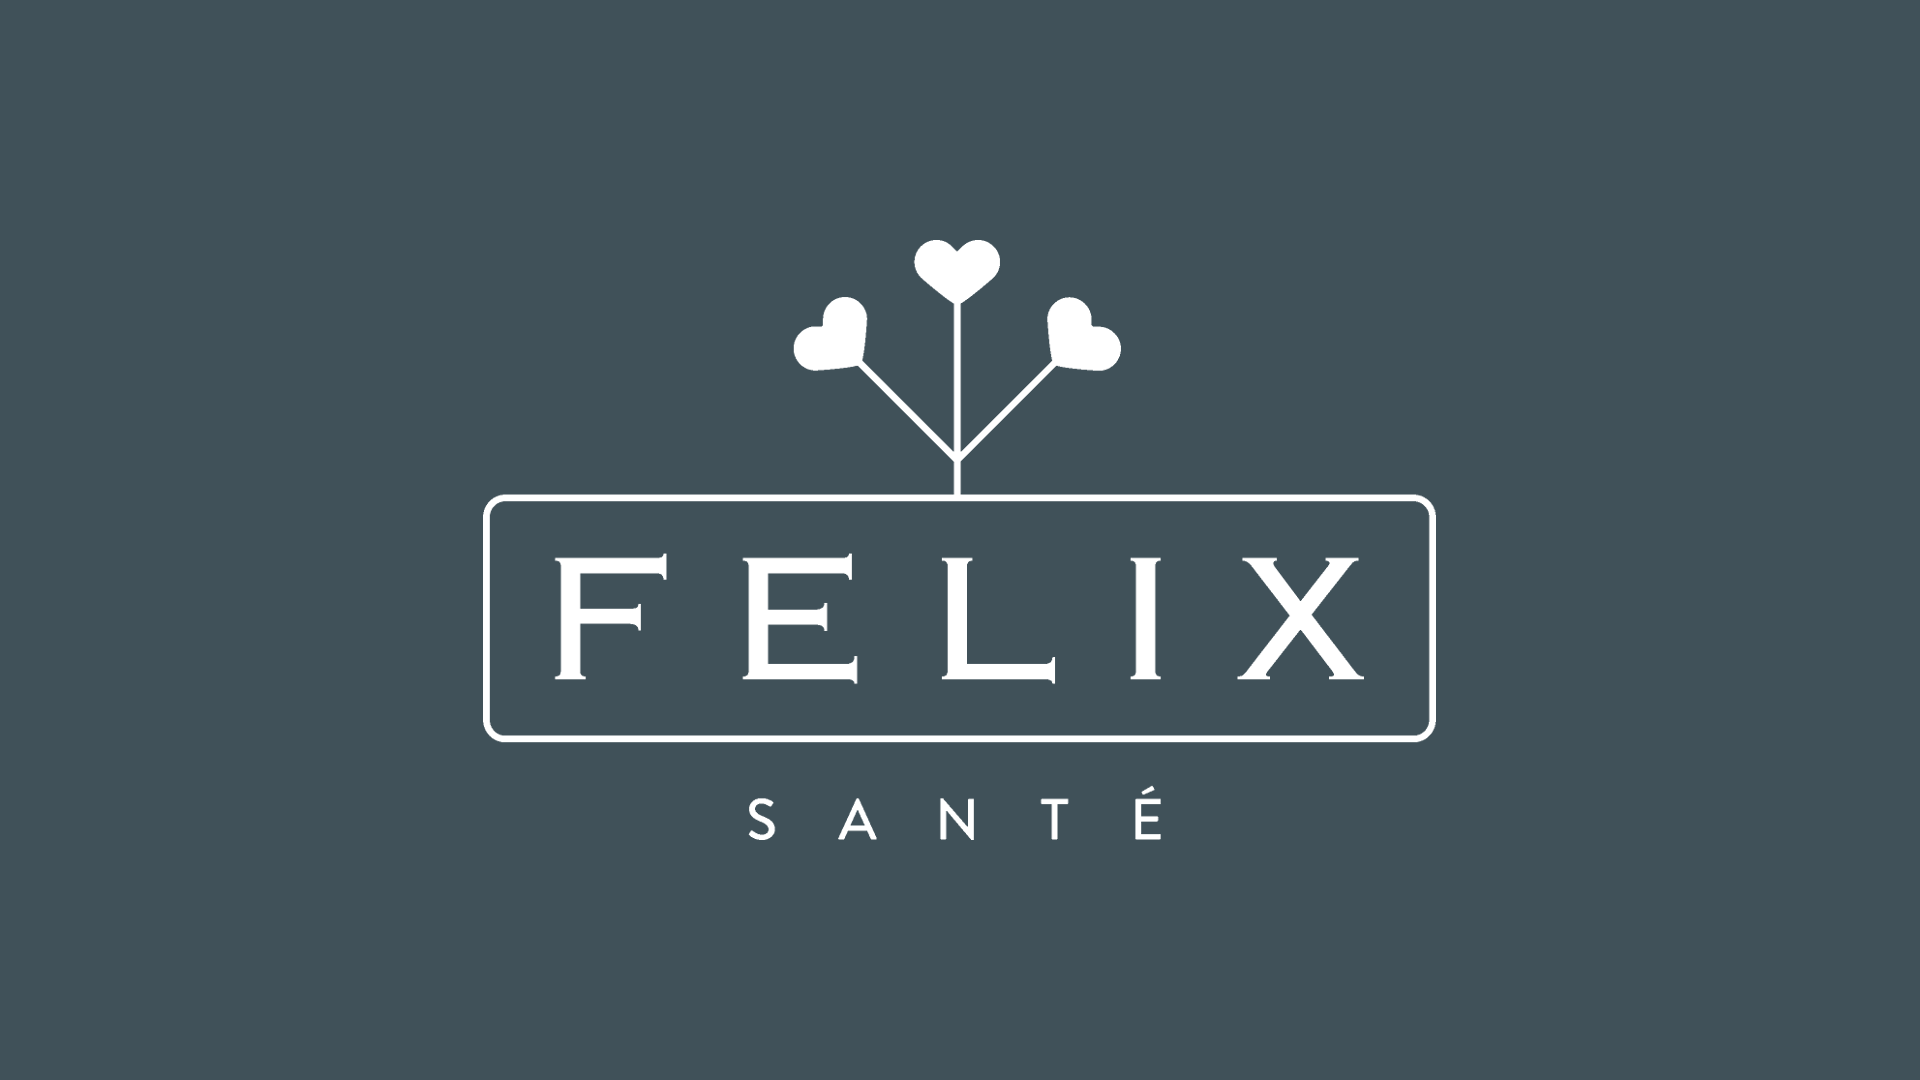 Bannière de Félix Santé